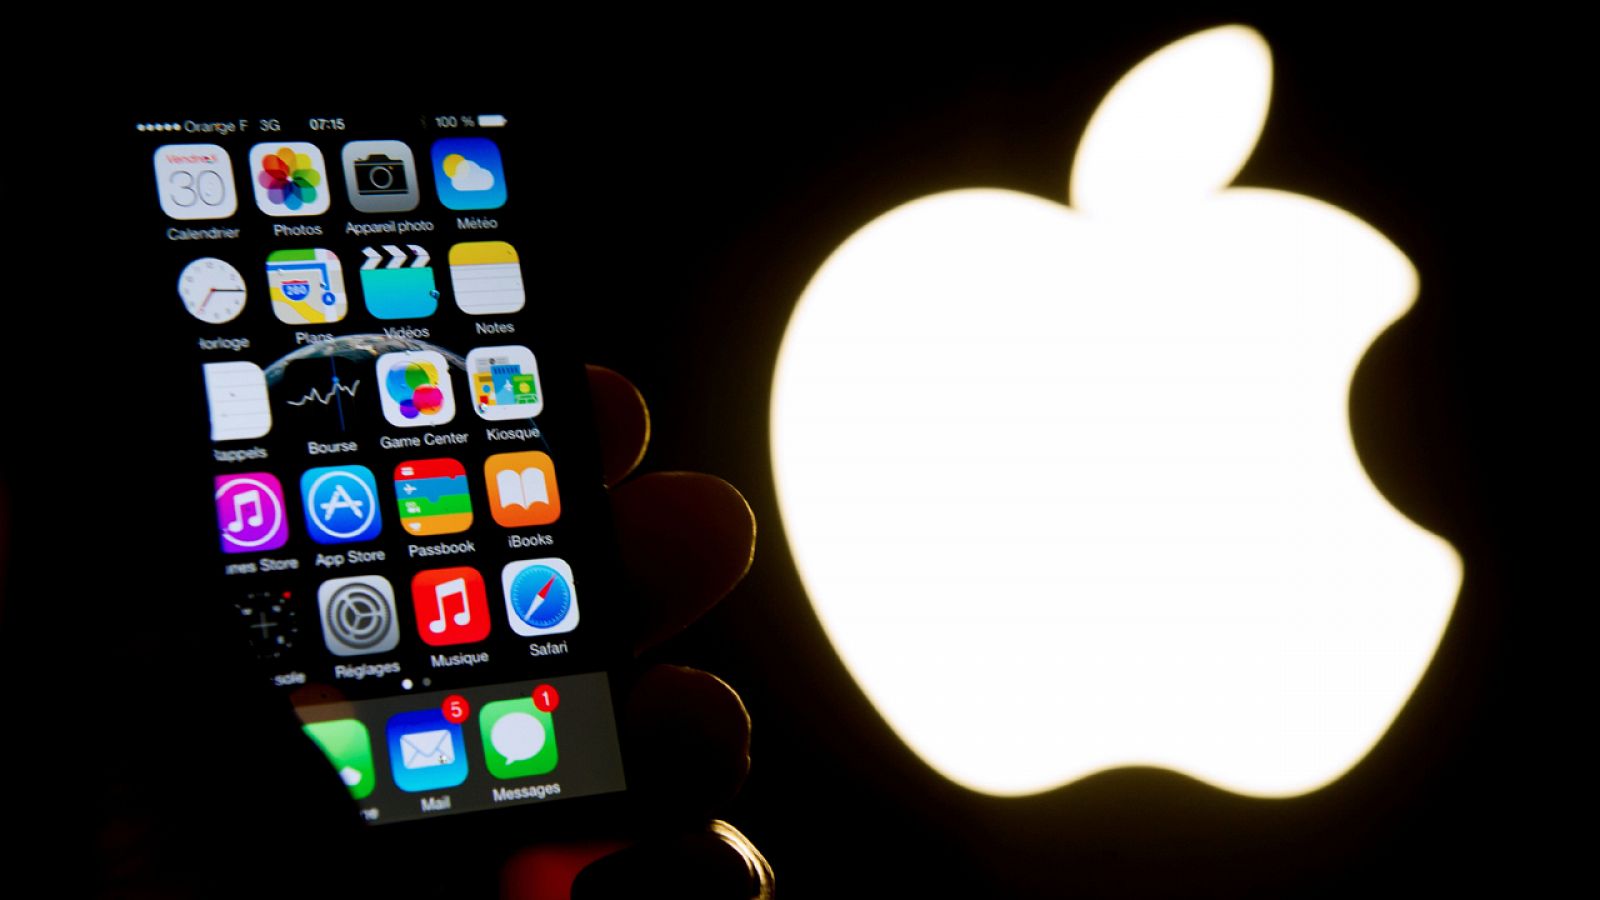 Foto de archivo mostrando un iPhone junto al logototipo de Apple